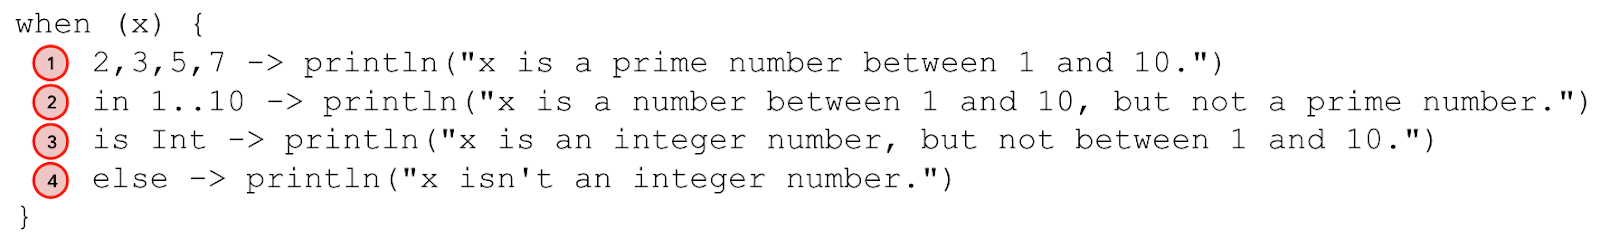 Diagram yang menganotasi pernyataan when. Baris 2,3,5,7 -> println(&quot;x is a prime number between 1 and 10.&quot;) dianotasi sebagai kasus 1. Baris in 1..10 -> println(&quot;x is a number between 1 and 10, but not a prime number.&quot;) dianotasi sebagai kasus 2. Baris is Int -> println(&quot;x is an integer number, but not between 1 and 10.&quot;) dianotasi sebagai kasus 3. Baris else -> println(&quot;x isn&#39;t an integer number.&quot;) dianotasi sebagai kasus 4. 